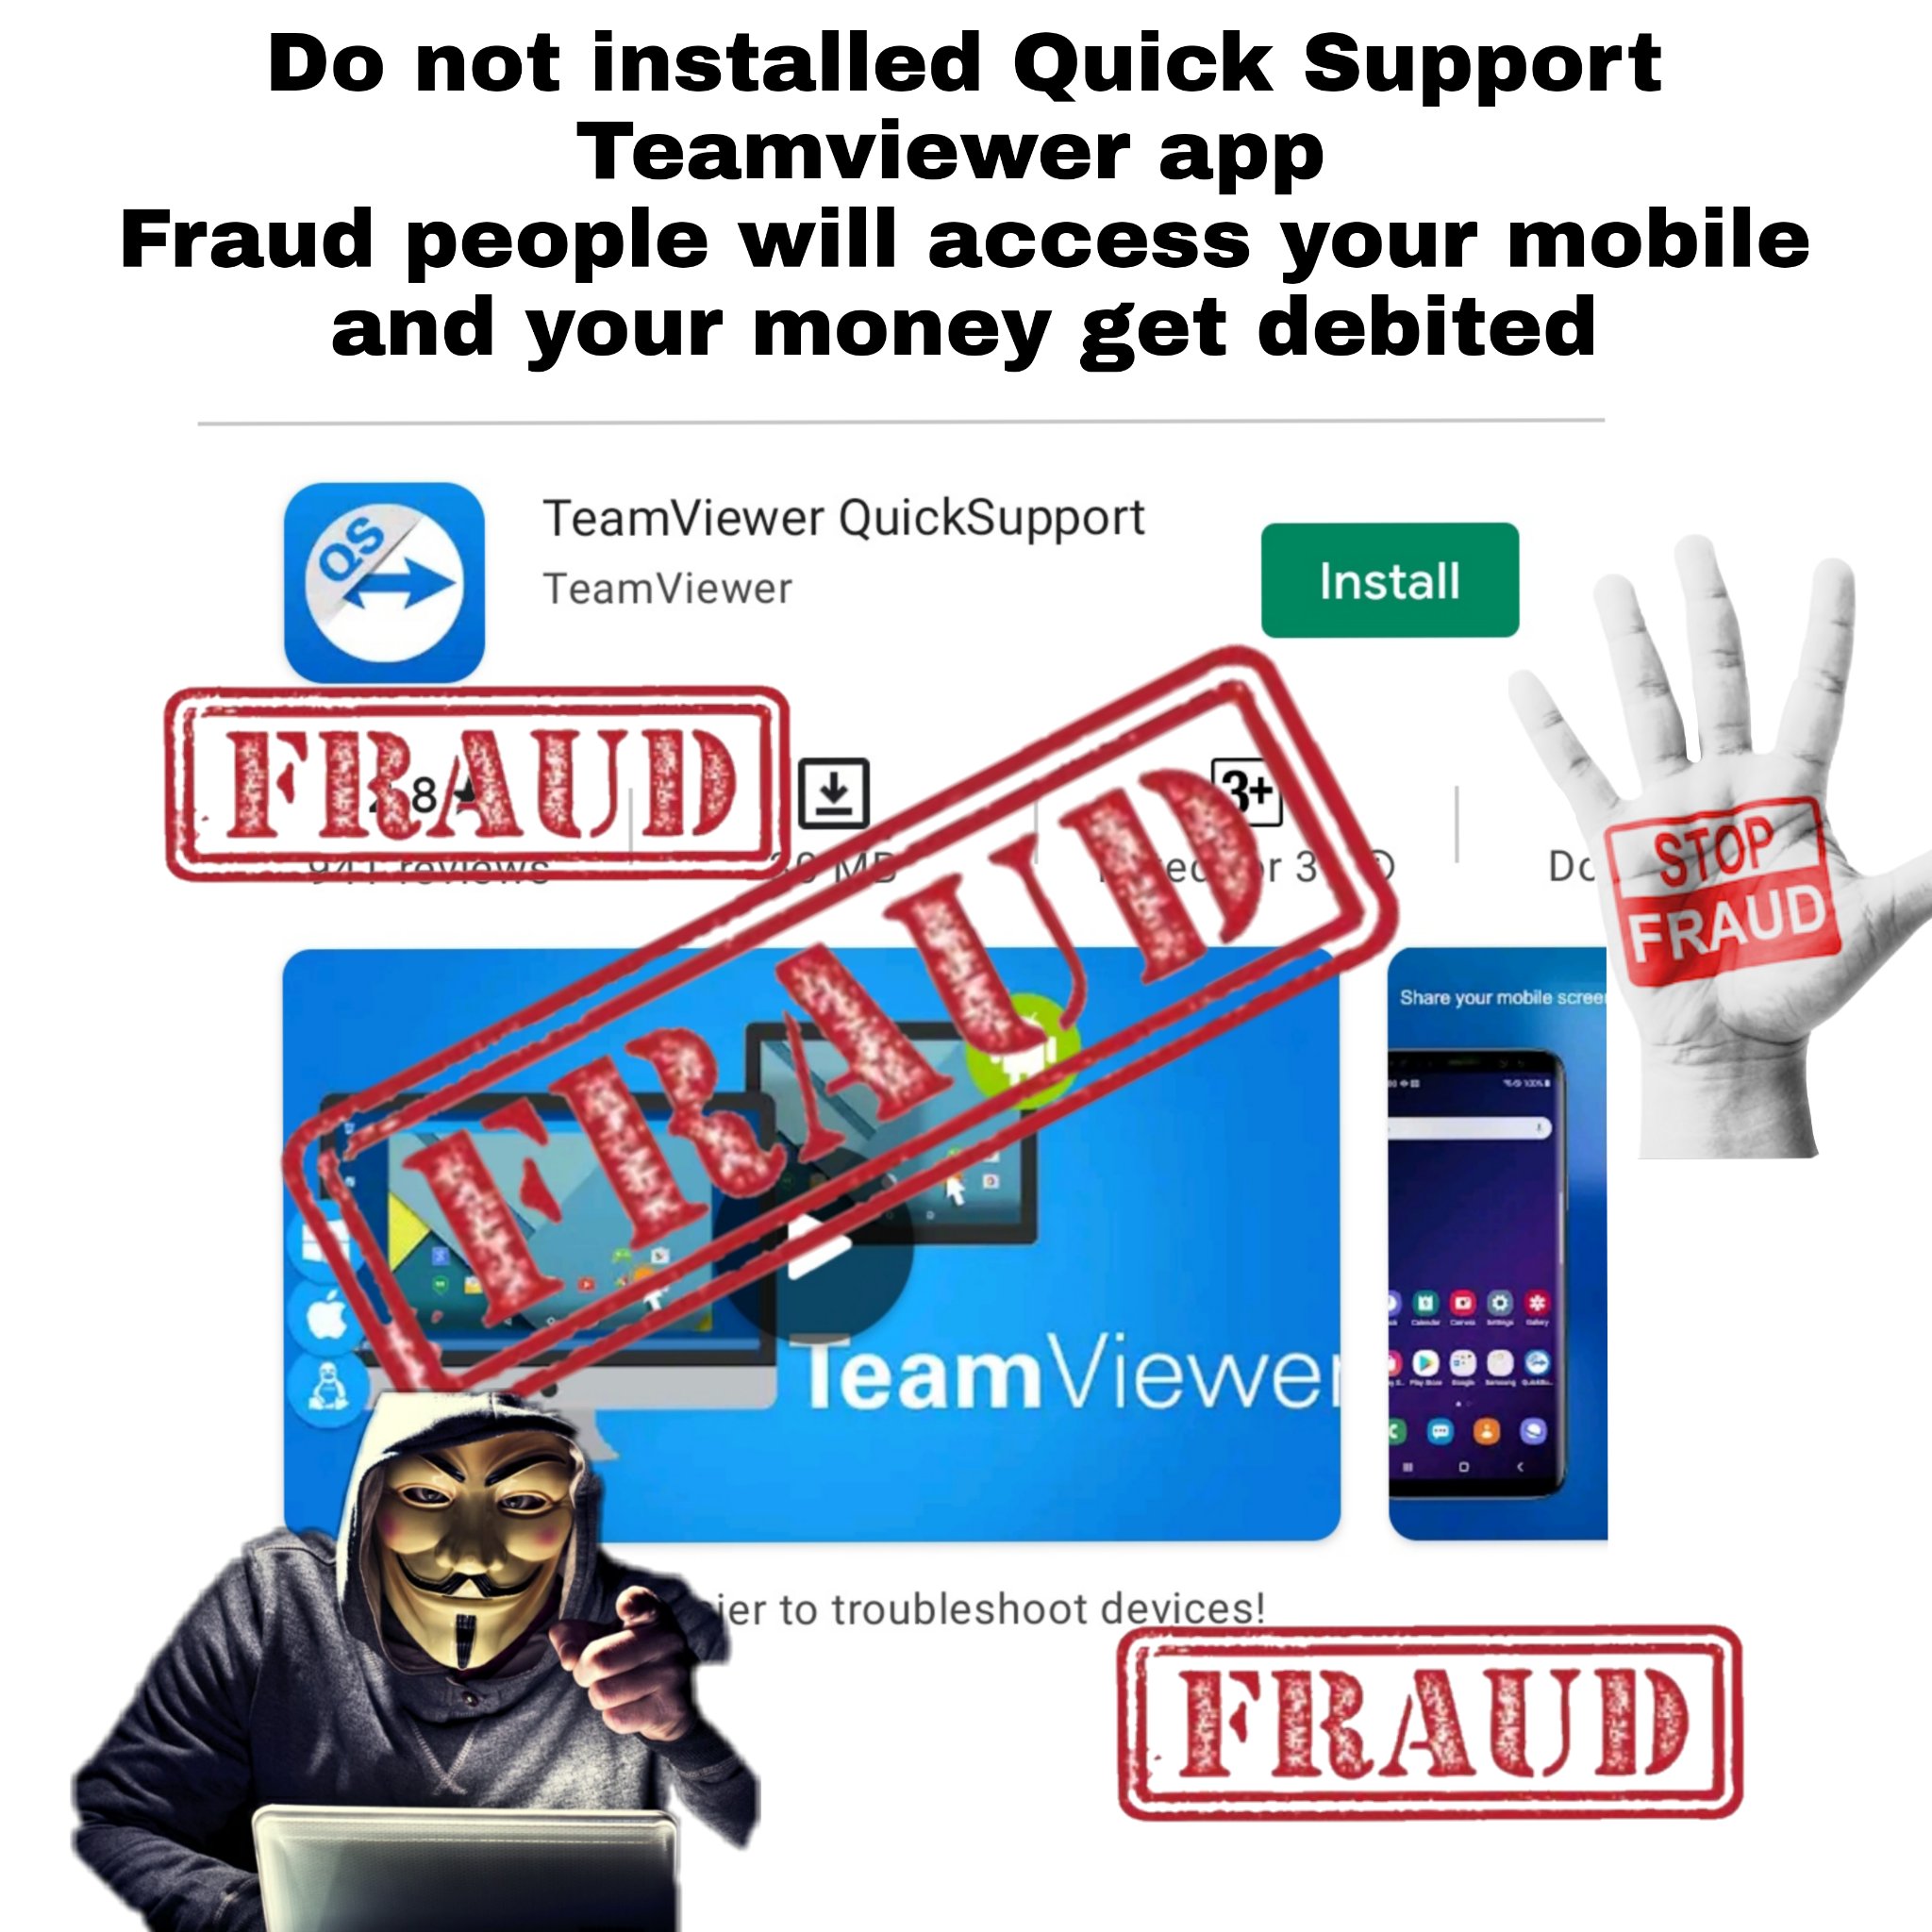 teamviewer mobile app fraud